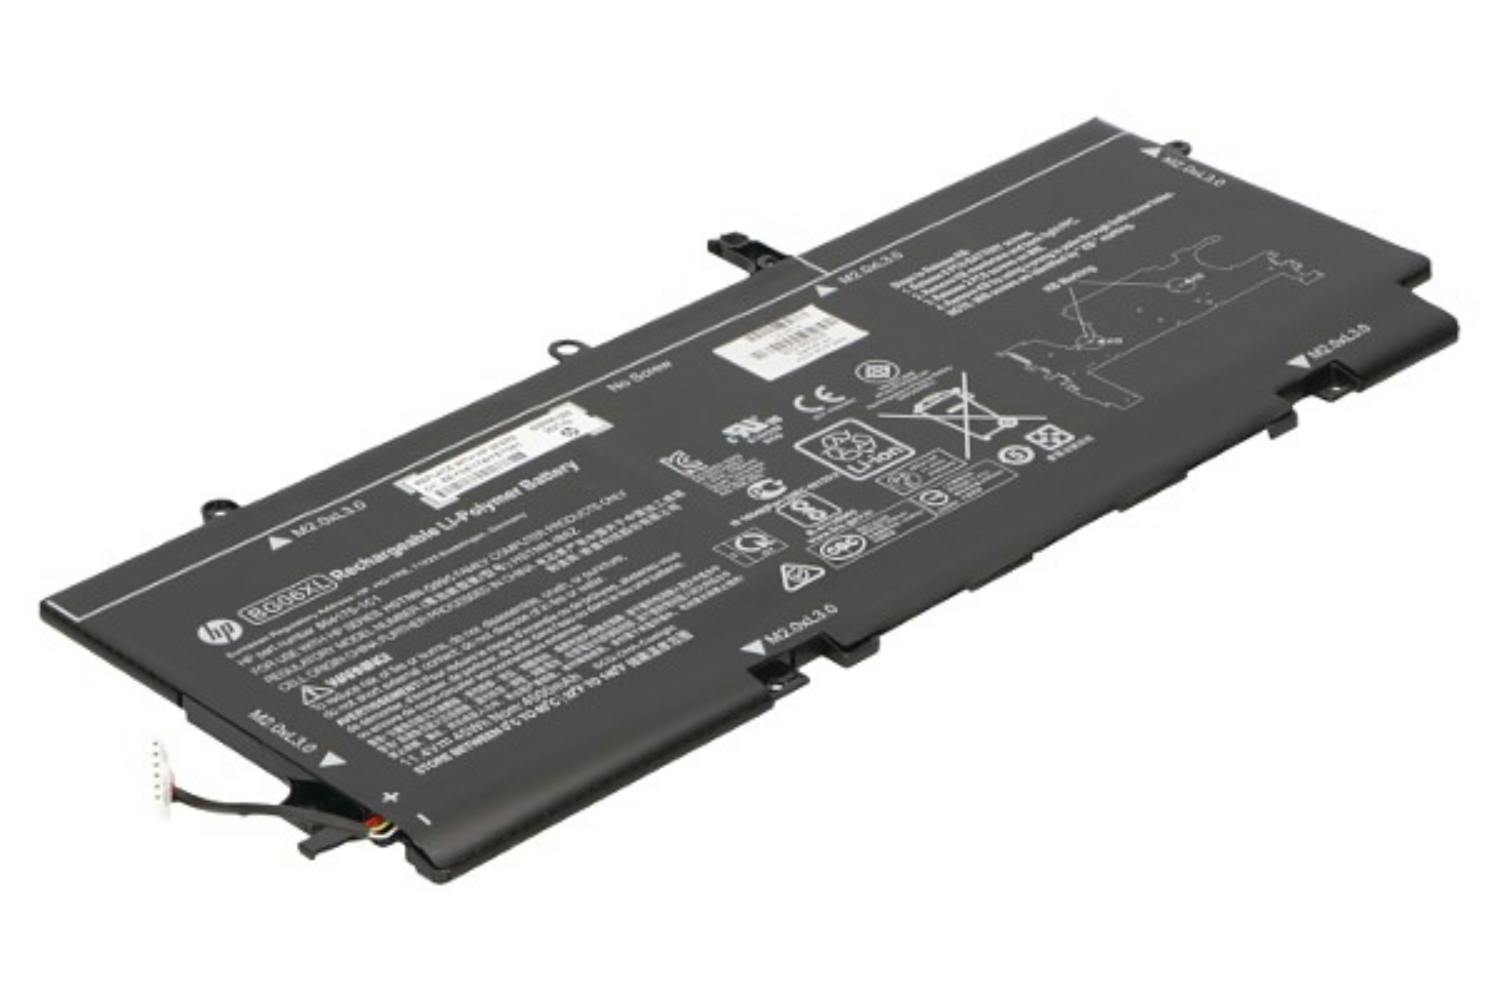 HP 4000mAh Main Battery Pack